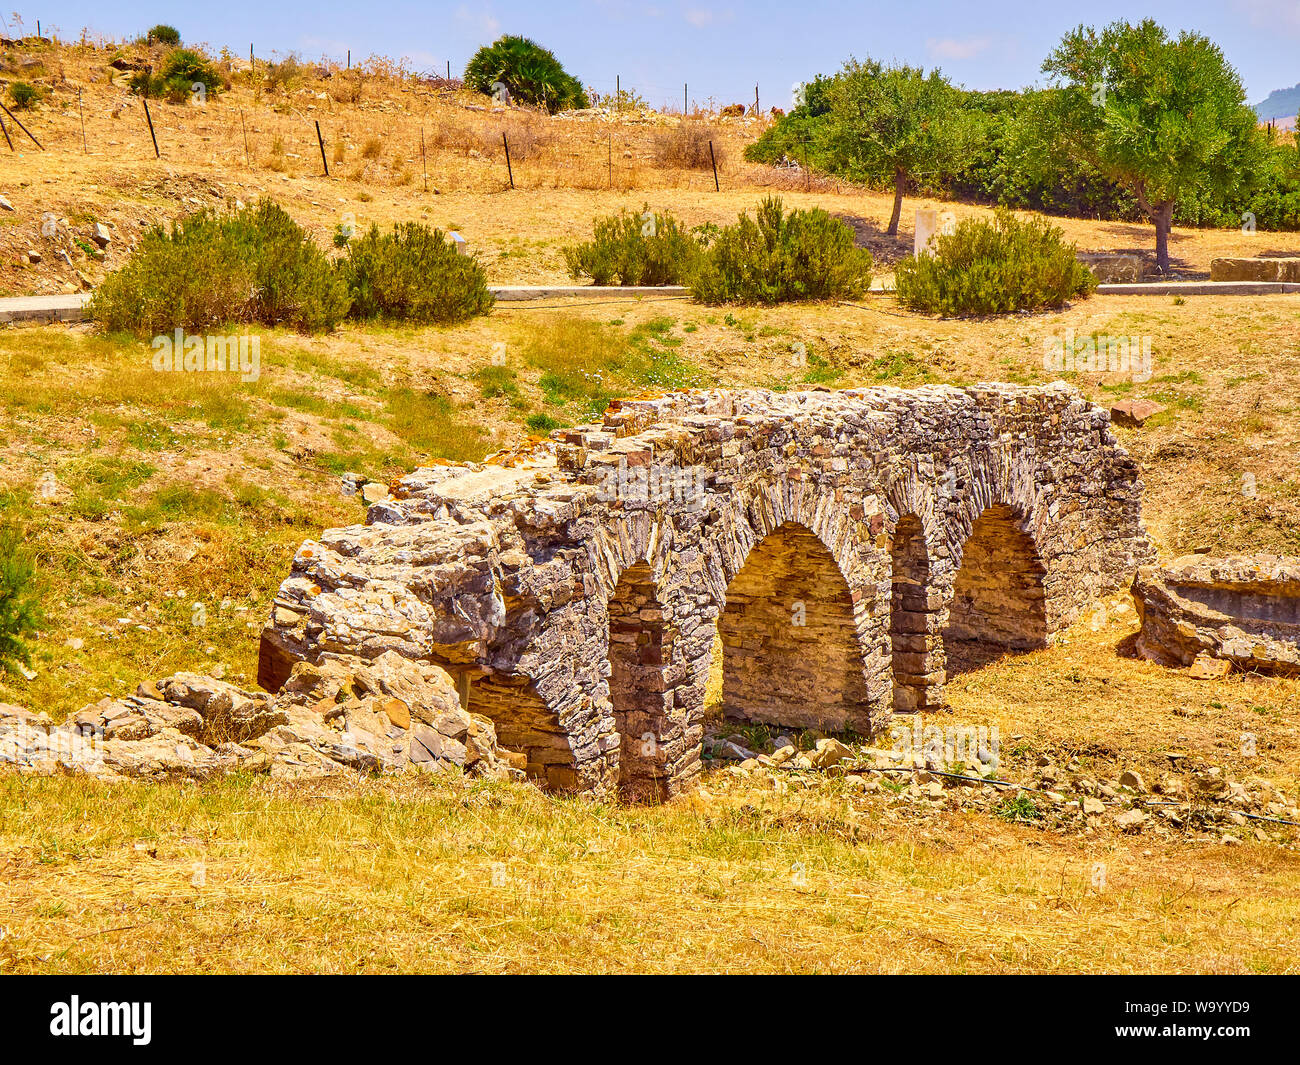 Remains of the Roman Aqueduct of Punta Paloma. Baelo Claudia Archaeological Site. Tarifa, Cadiz. Andalusia, Spain. Stock Photo